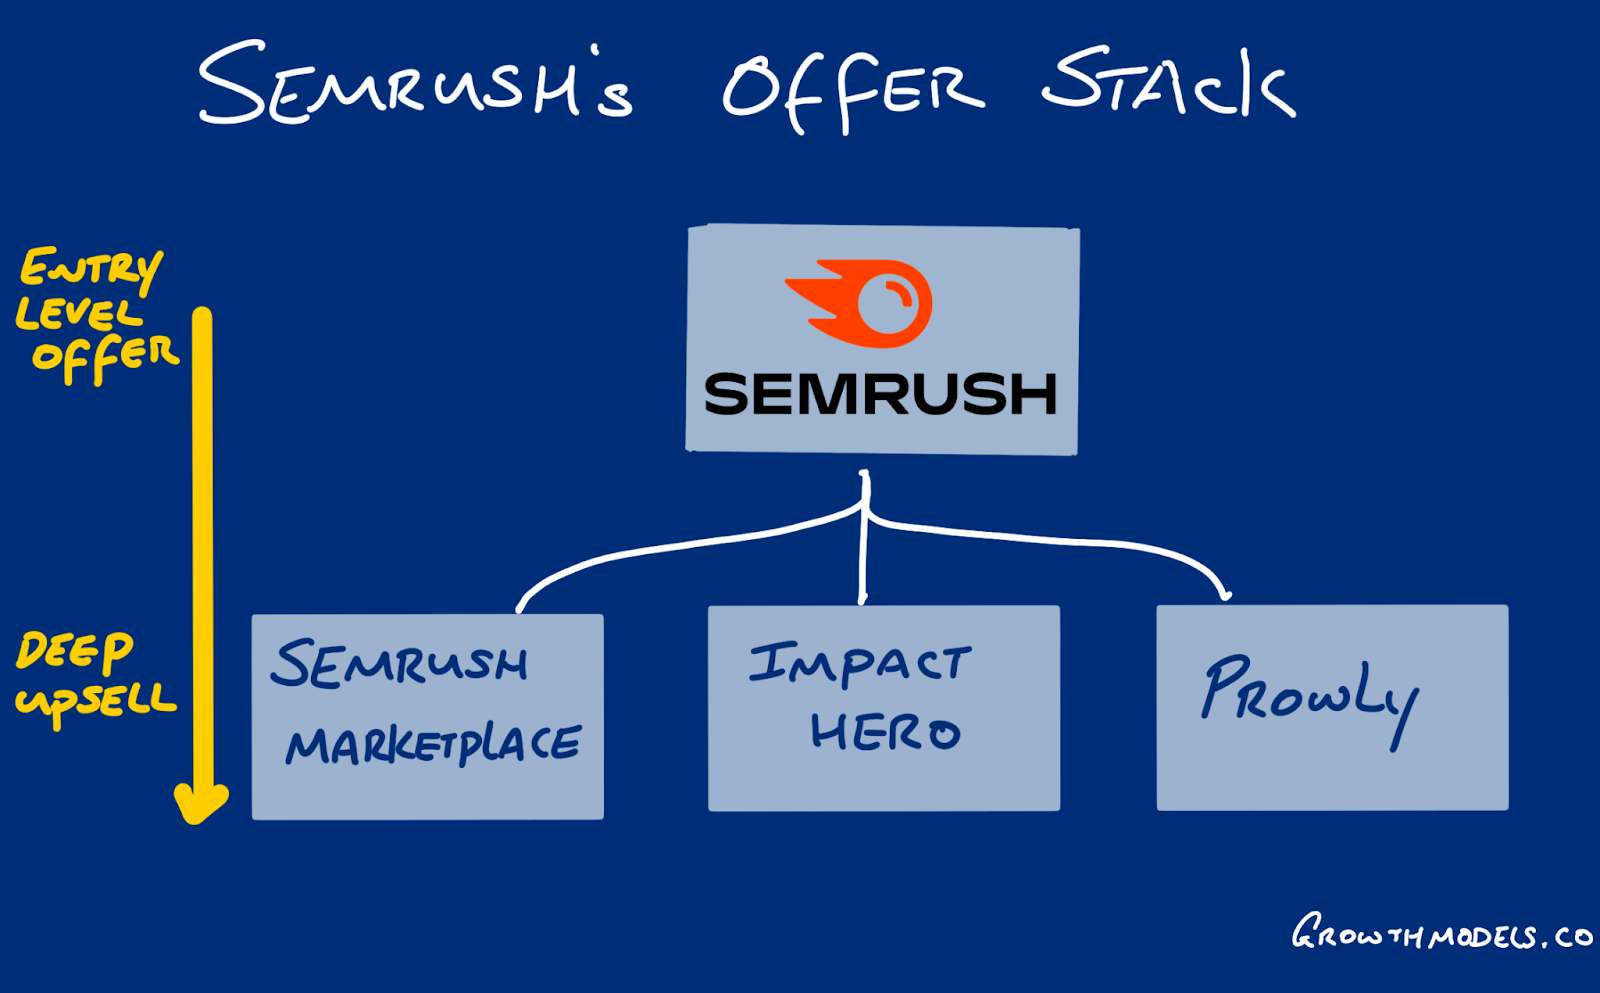 Semrush stacks their offers for better marketing